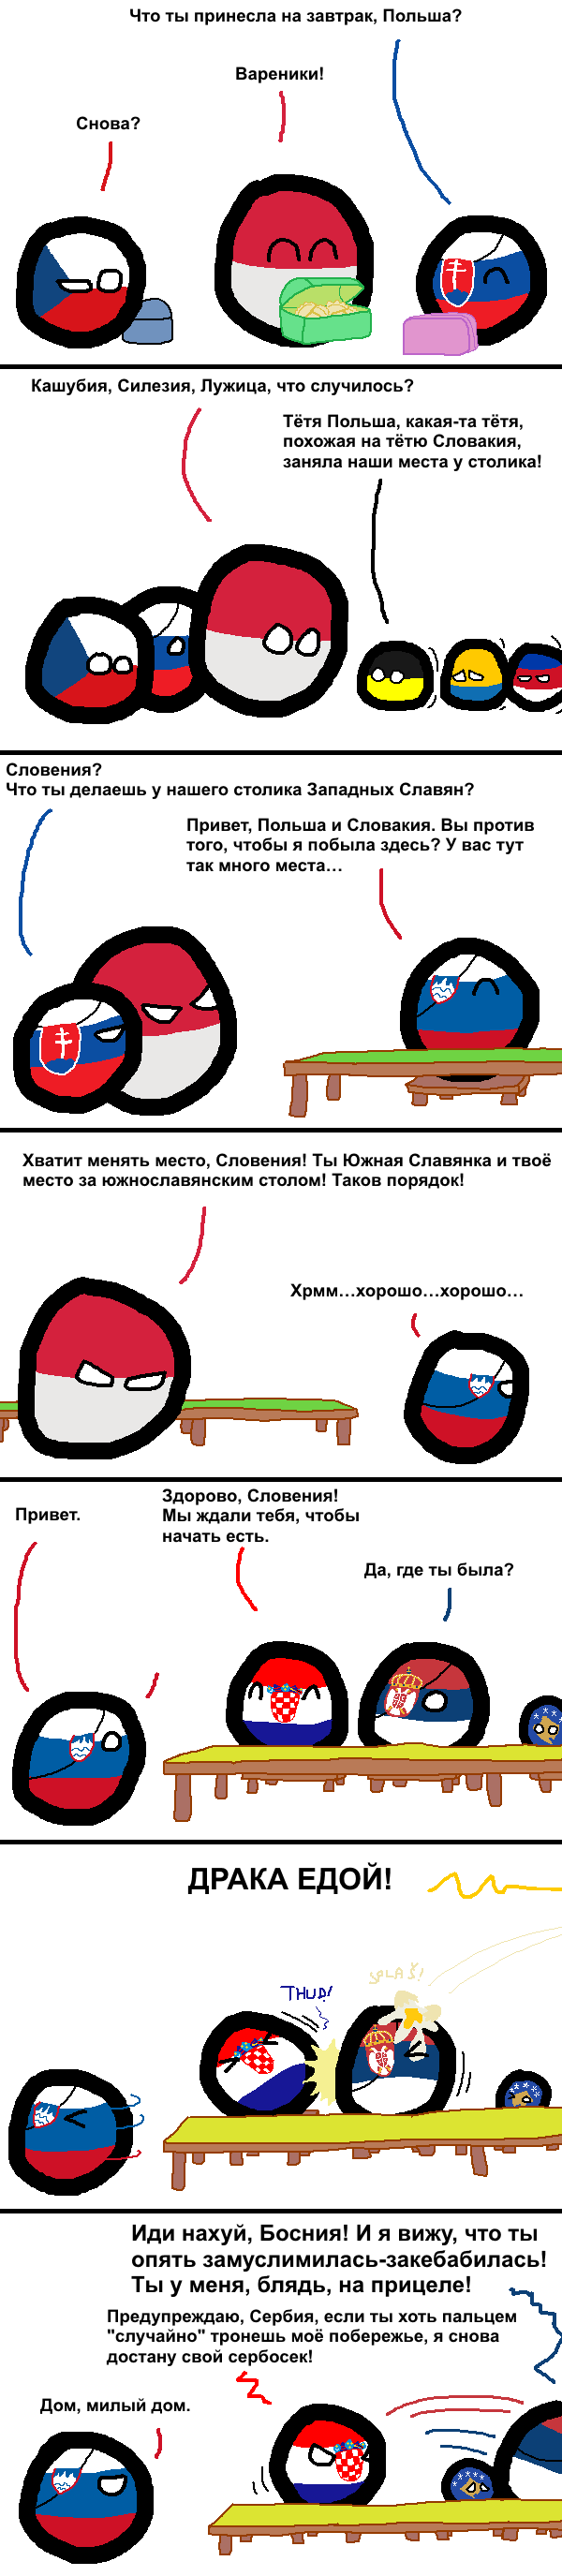 Южные славяне